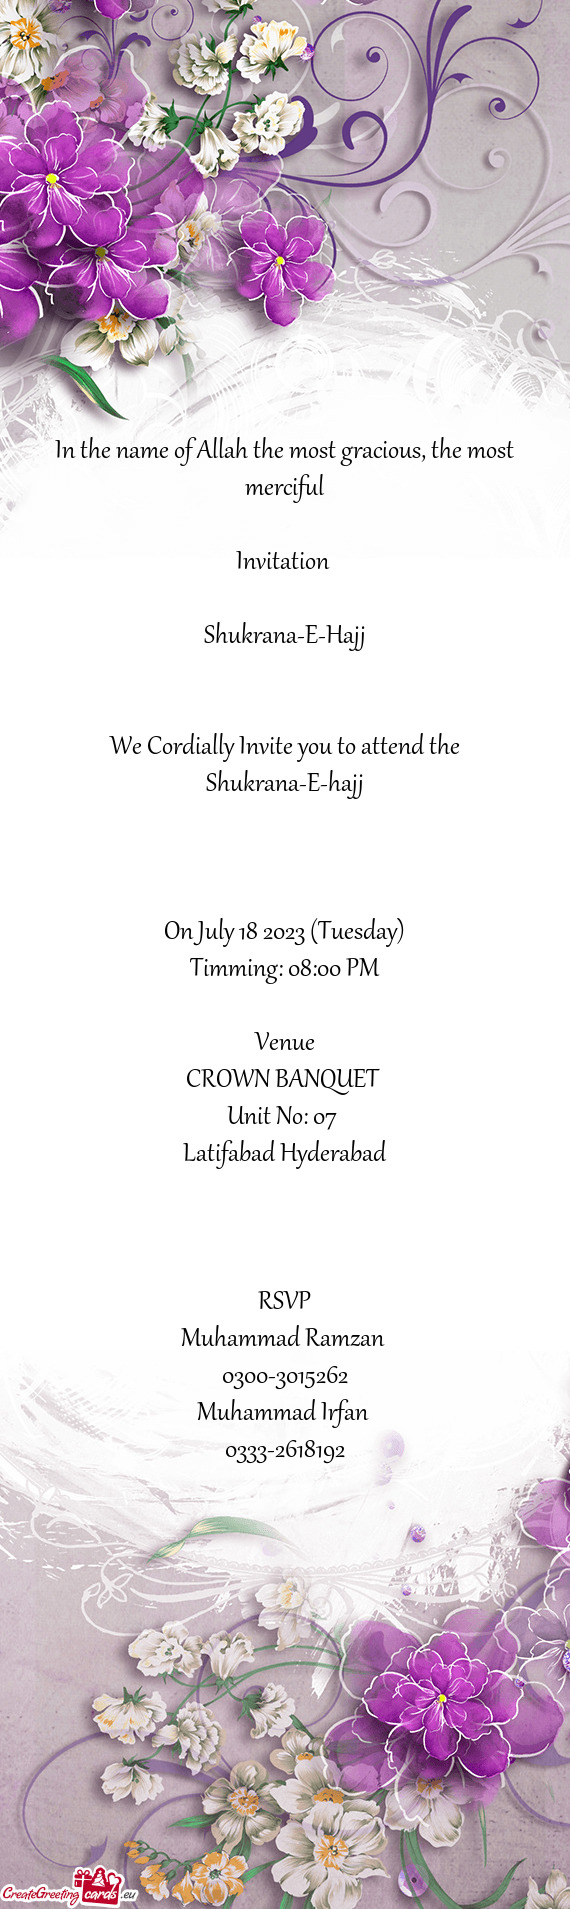 We Cordially Invite you to attend the Shukrana-E-hajj